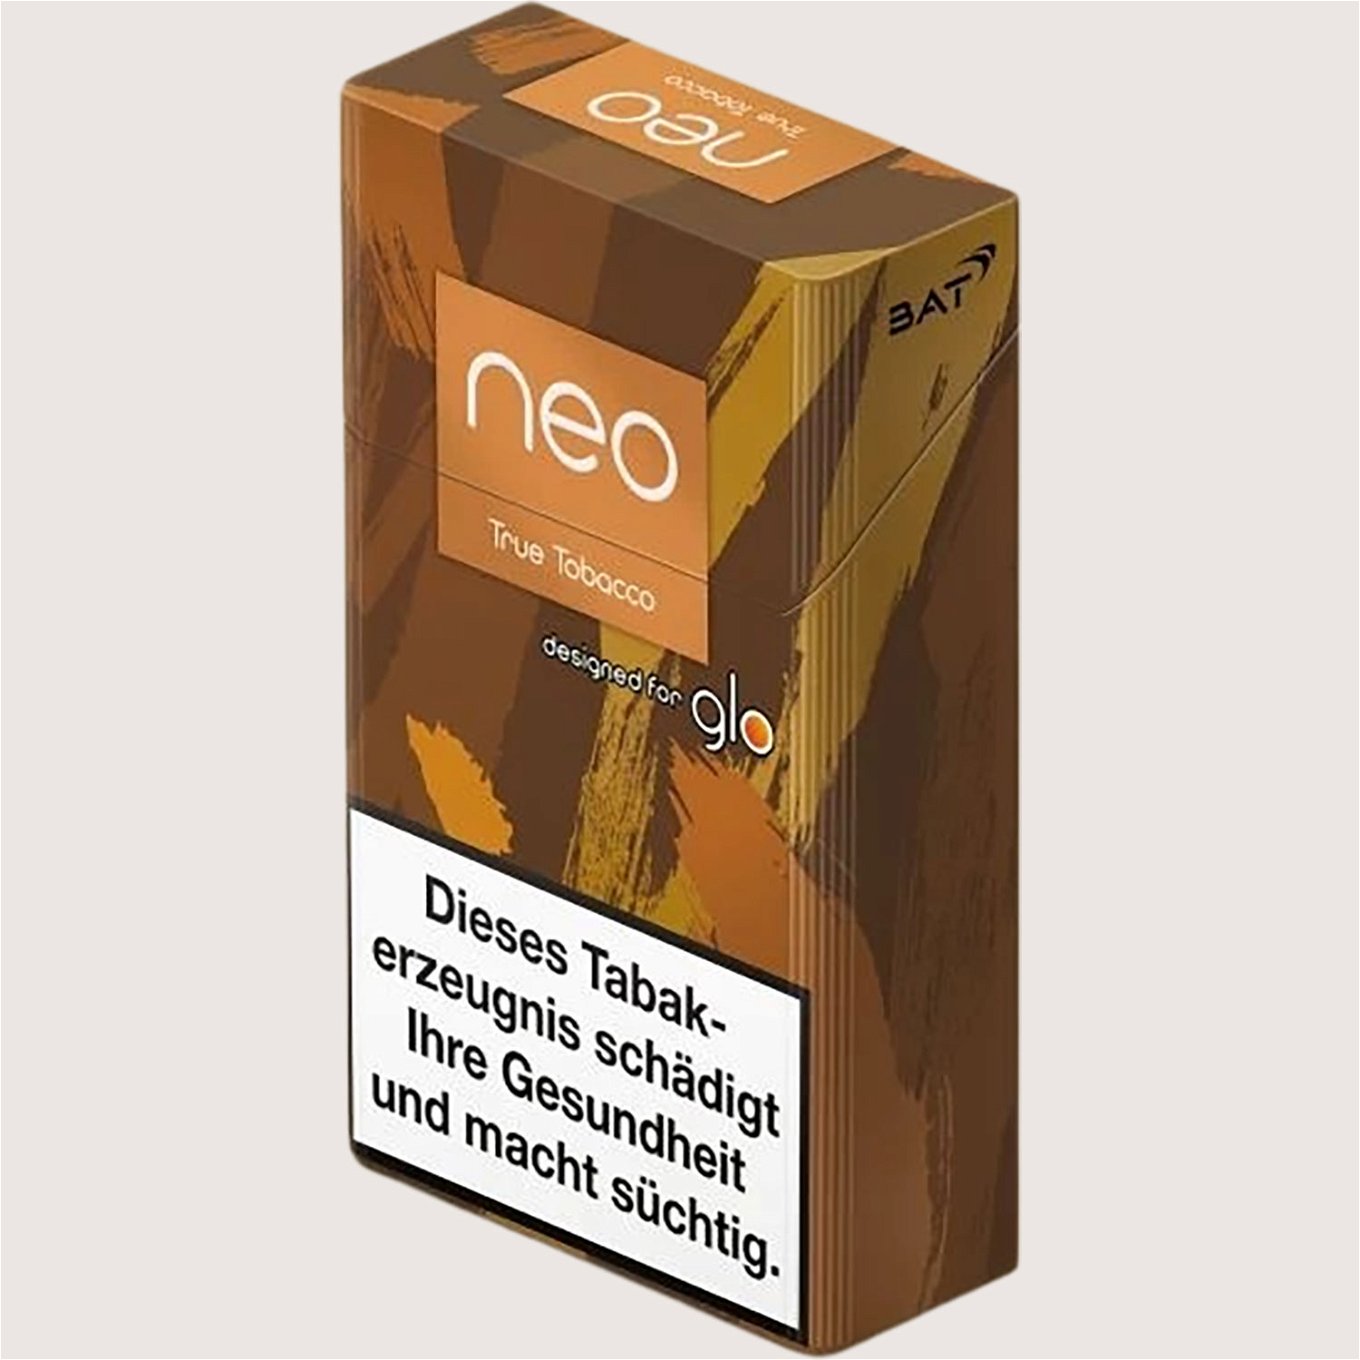 GLO Neo True Tobacco